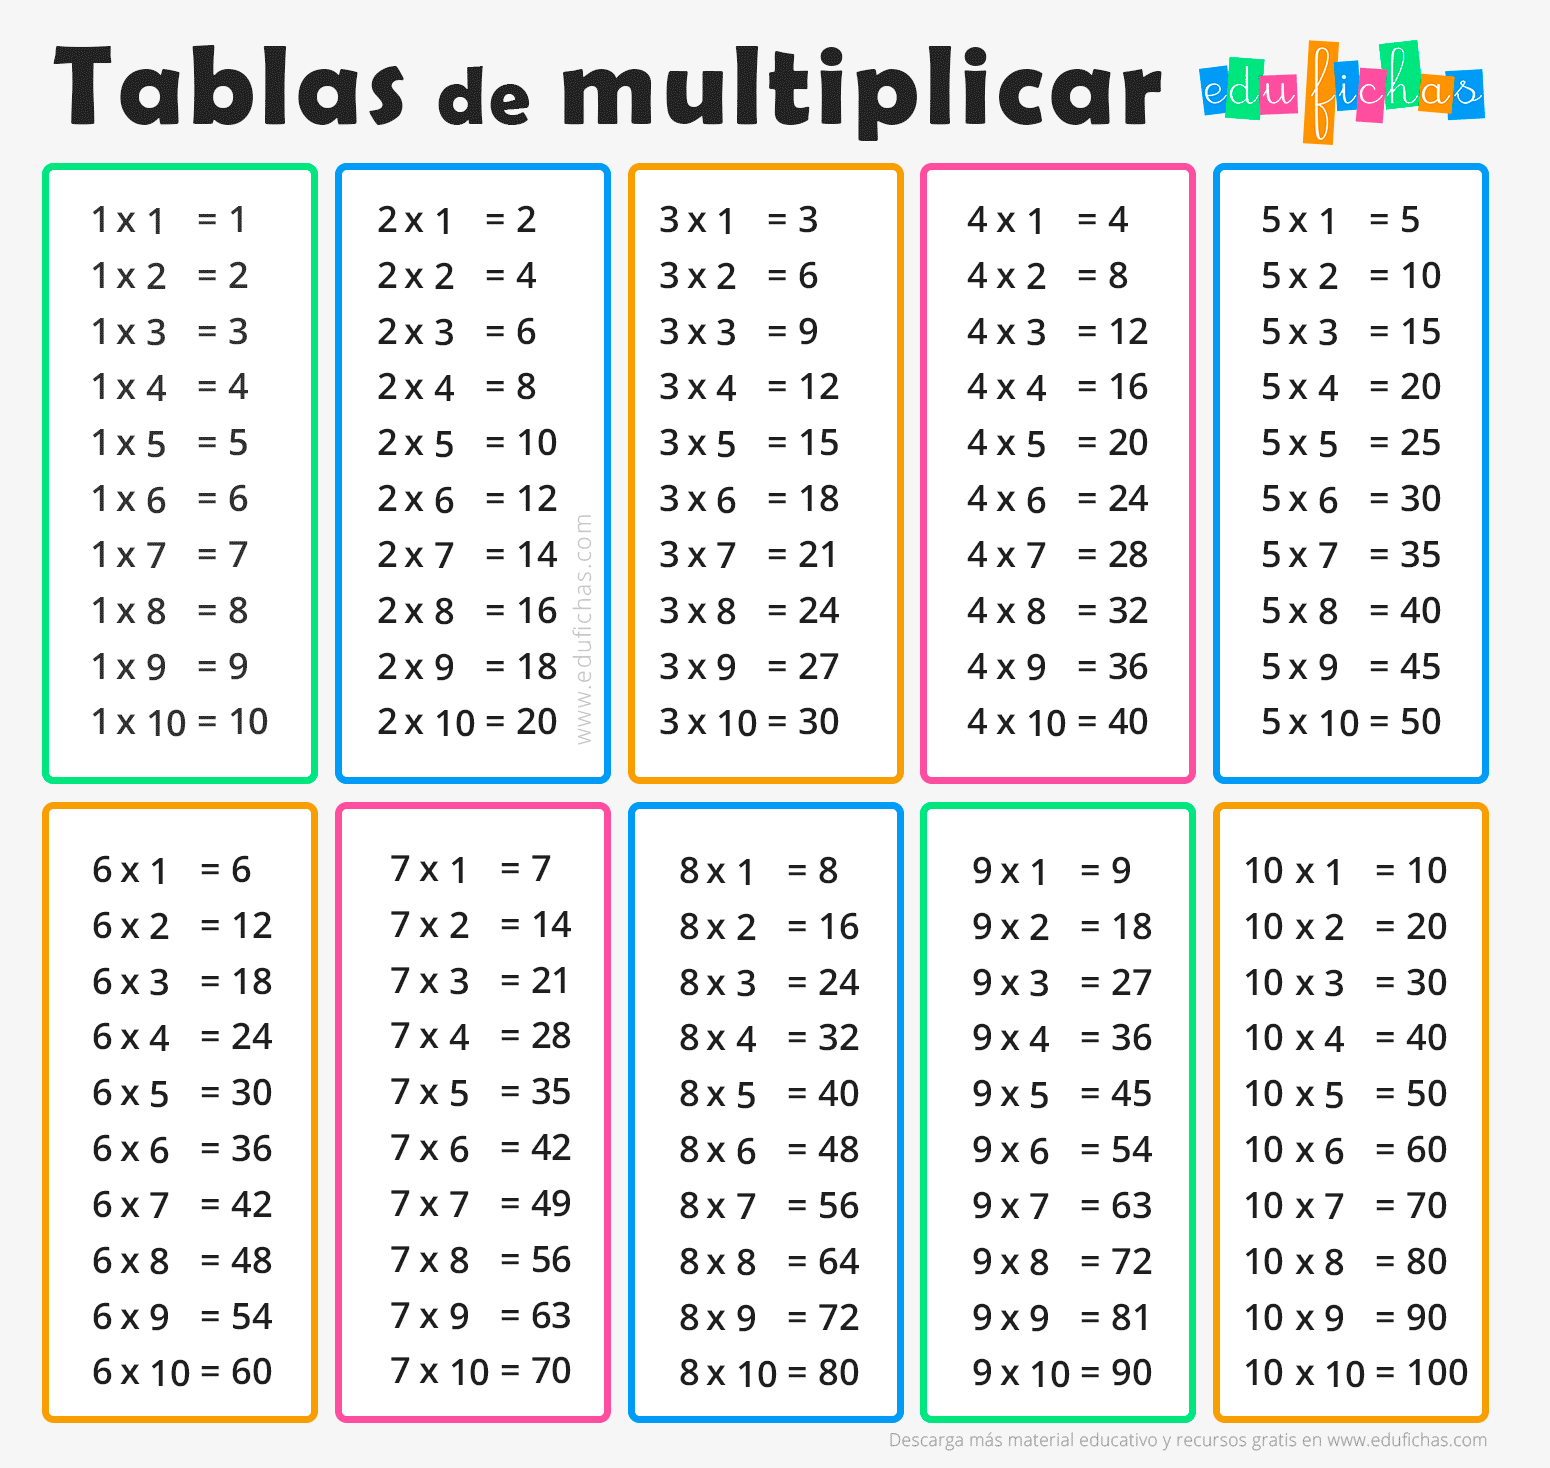 Imagenes Tablas De Multiplicar